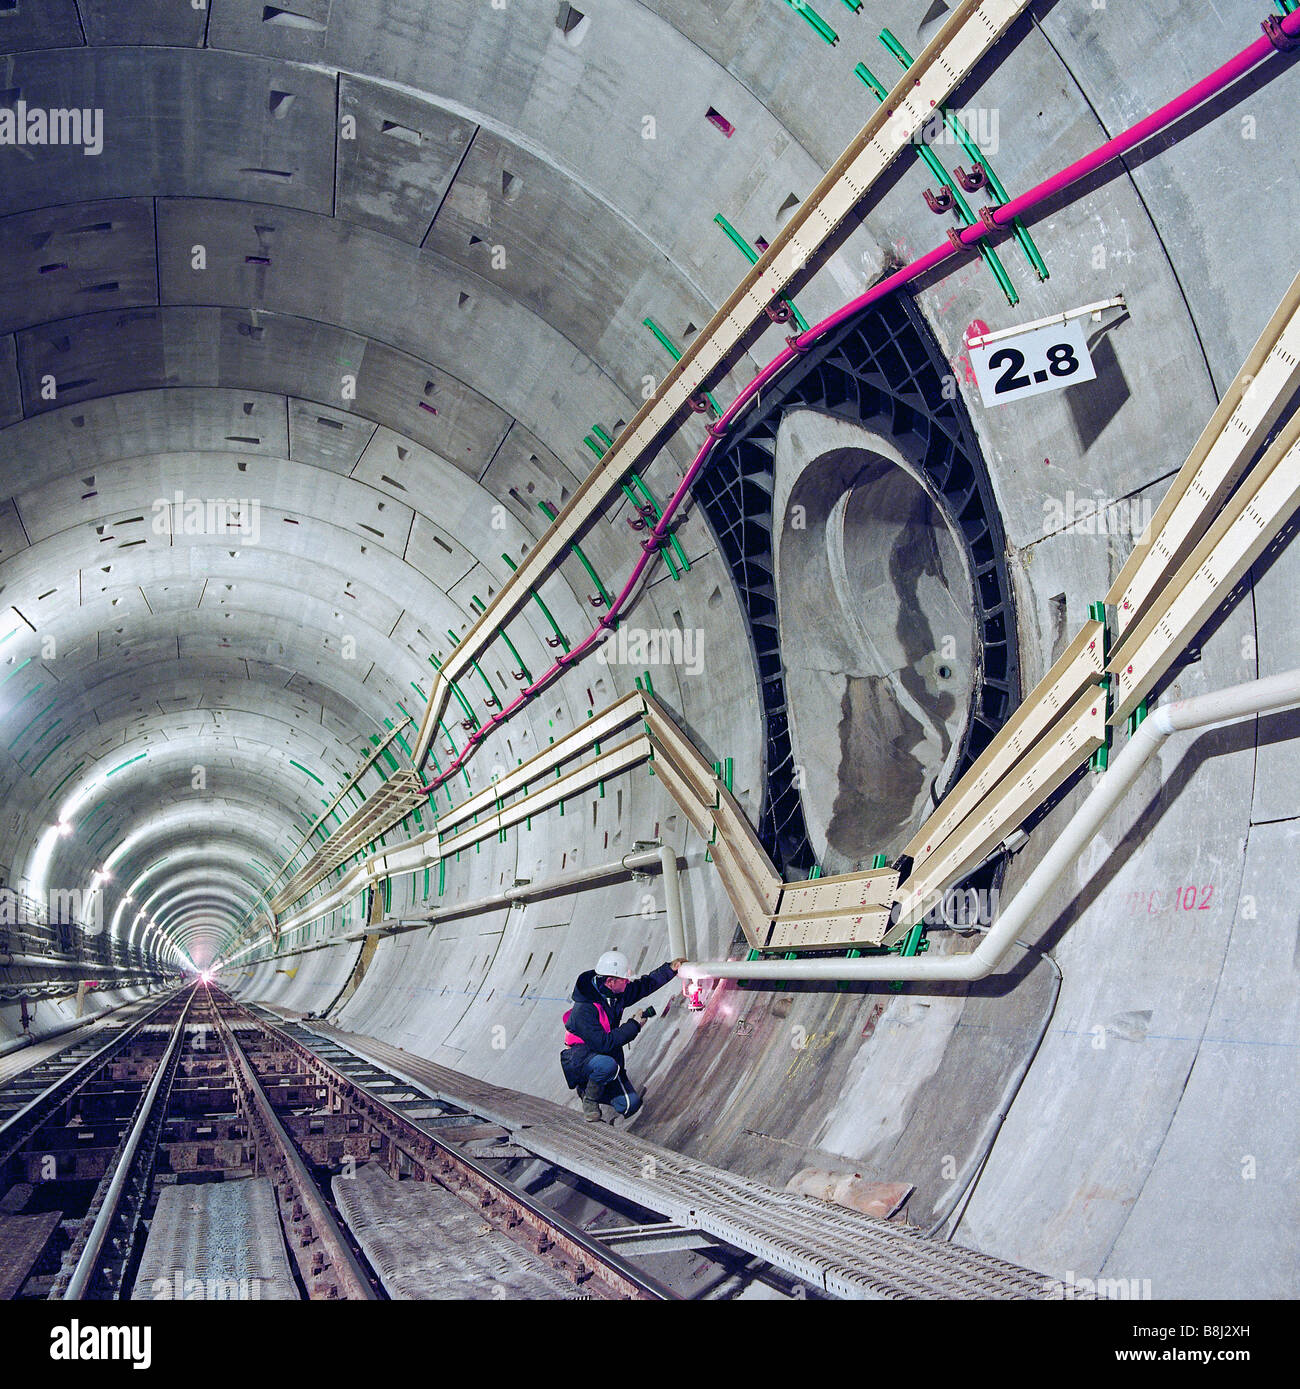 Ingénieur du Tunnel sous la Manche examine un allégement du piston d'air qui est utilisé pour contrôler la pression d'air dans un tunnel ferroviaire française. Banque D'Images